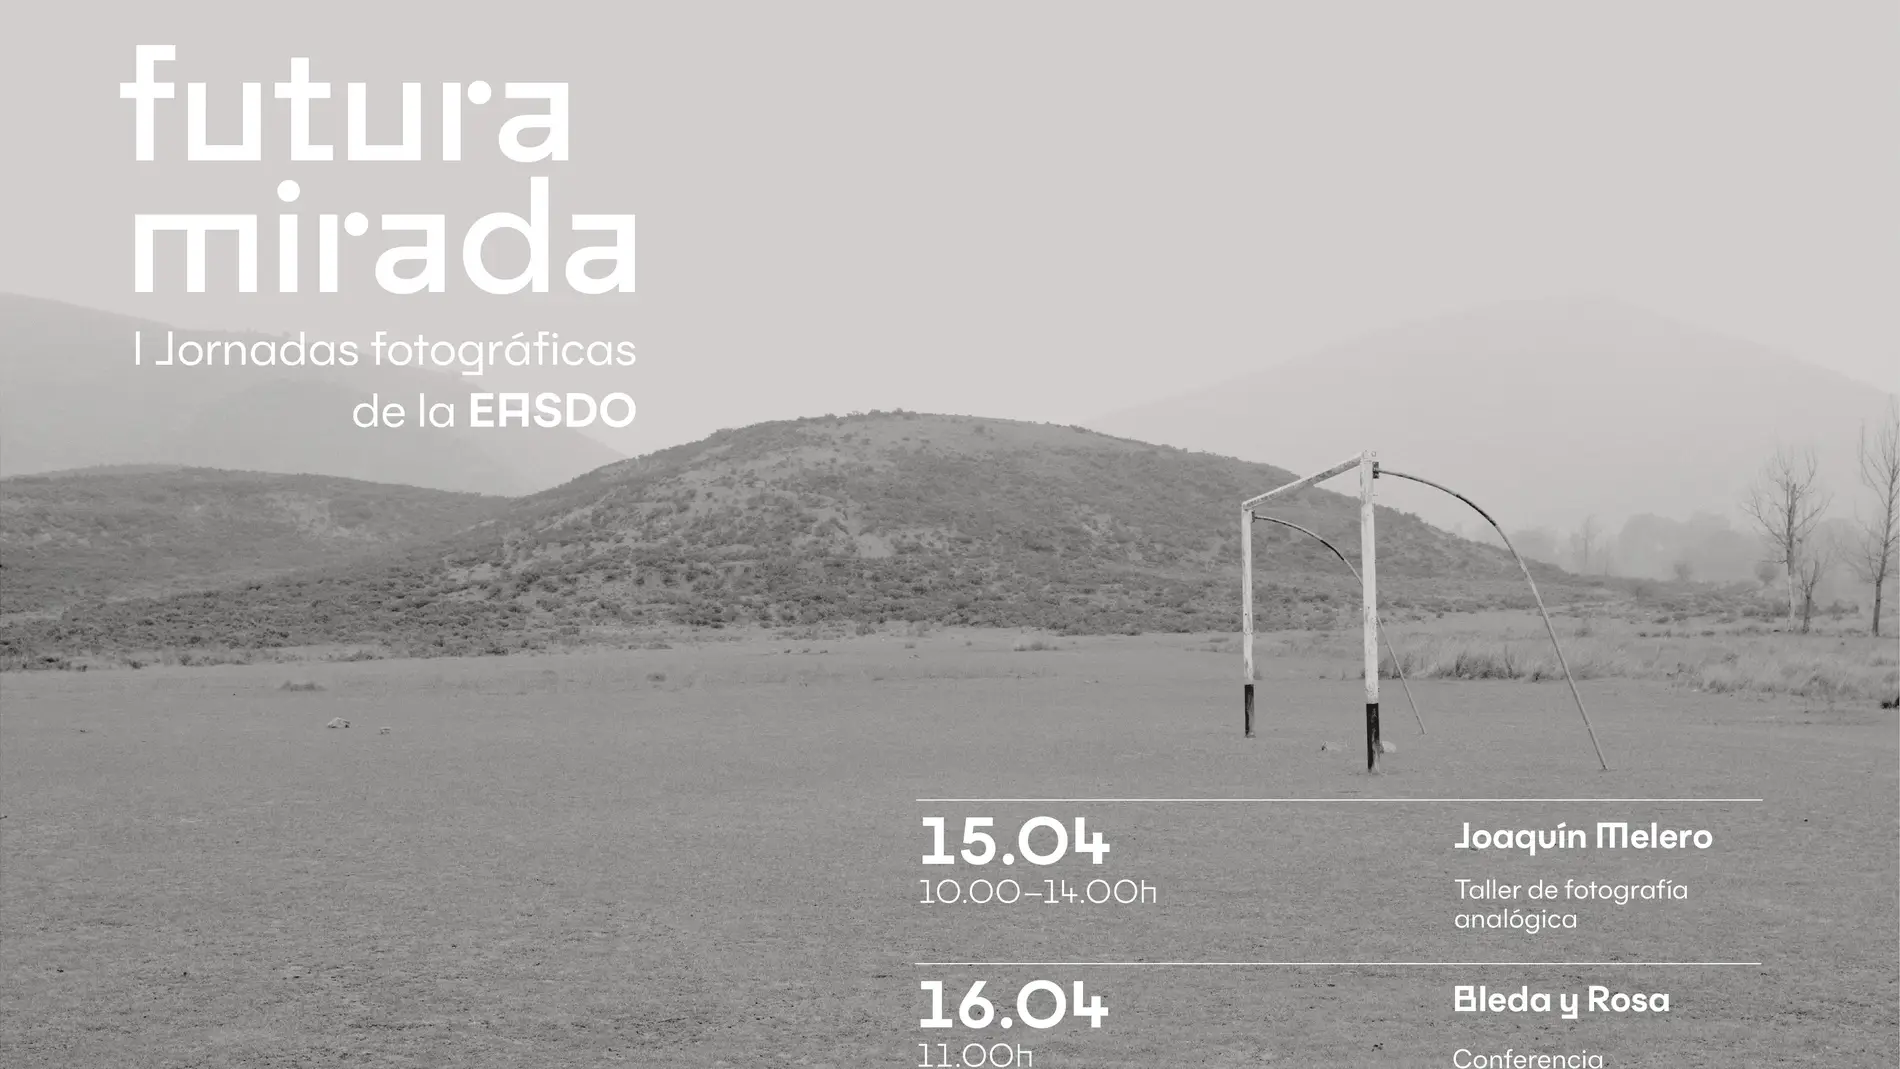 Orihuela organiza las jornadas fotográficas de la Easdo Futura Mirada los días 16 y 17 de abril 